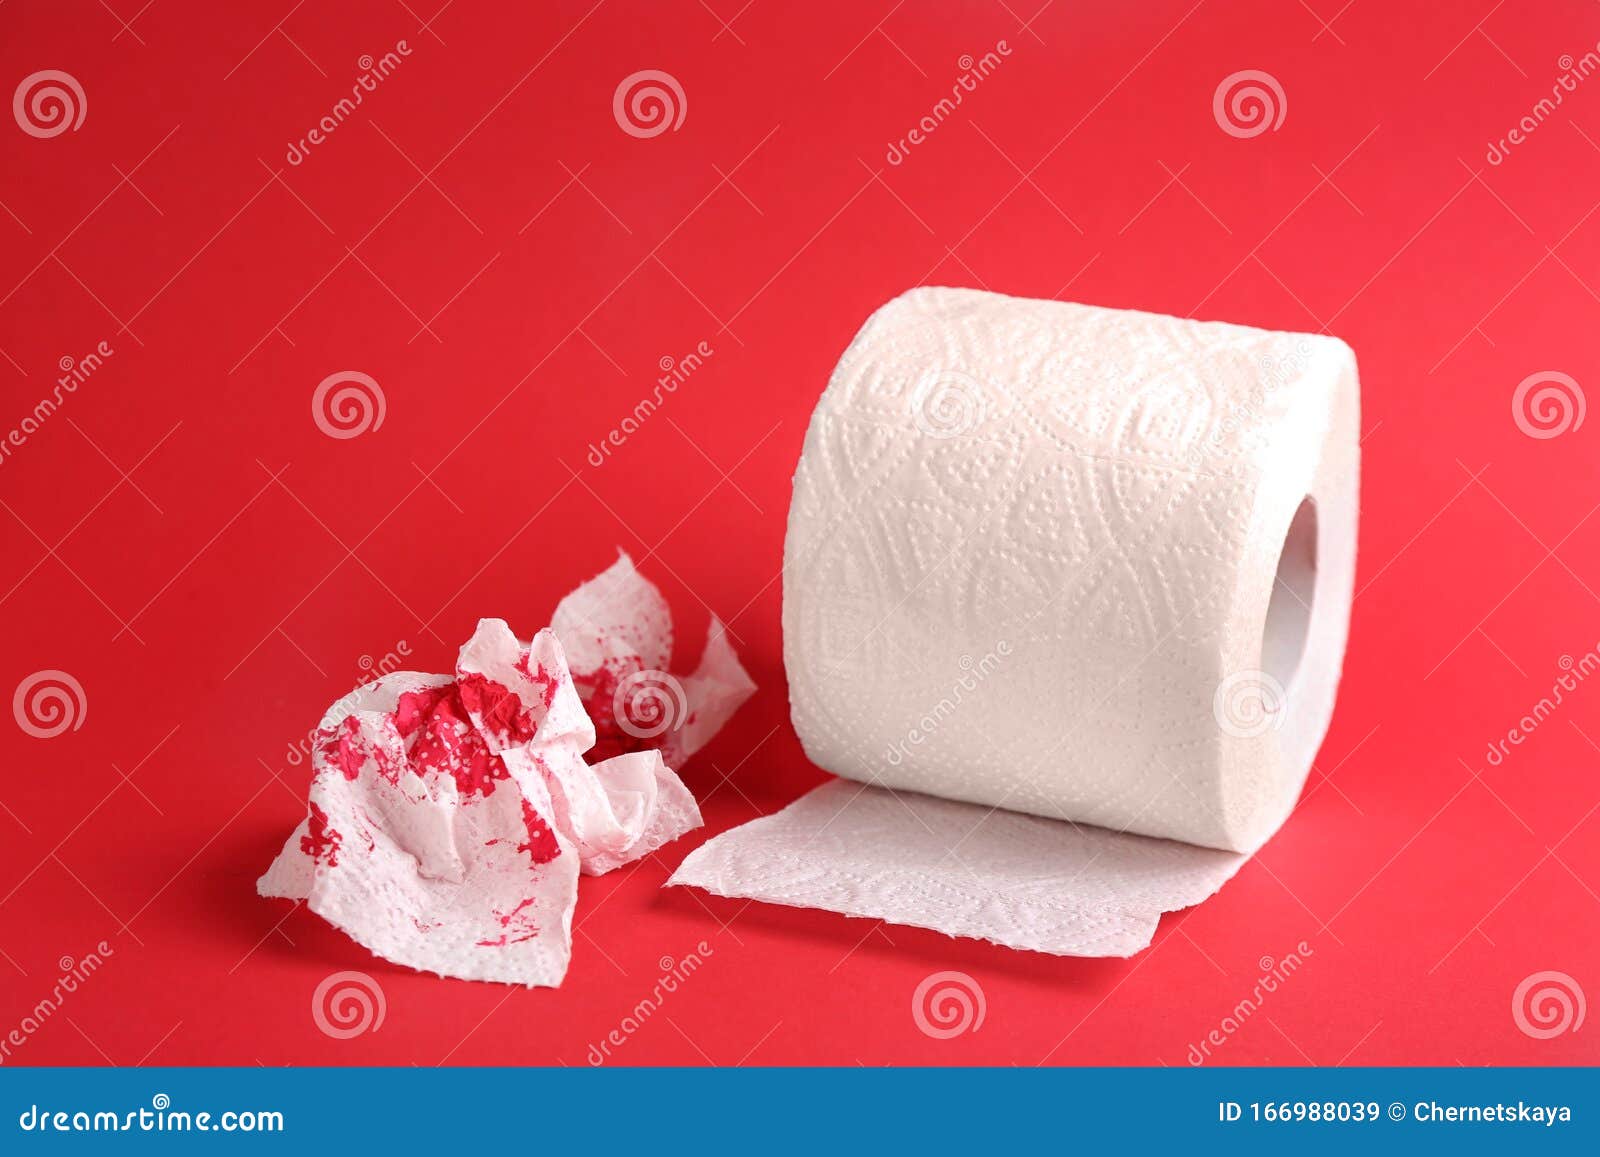 После туалета кровь на туалетной бумаге